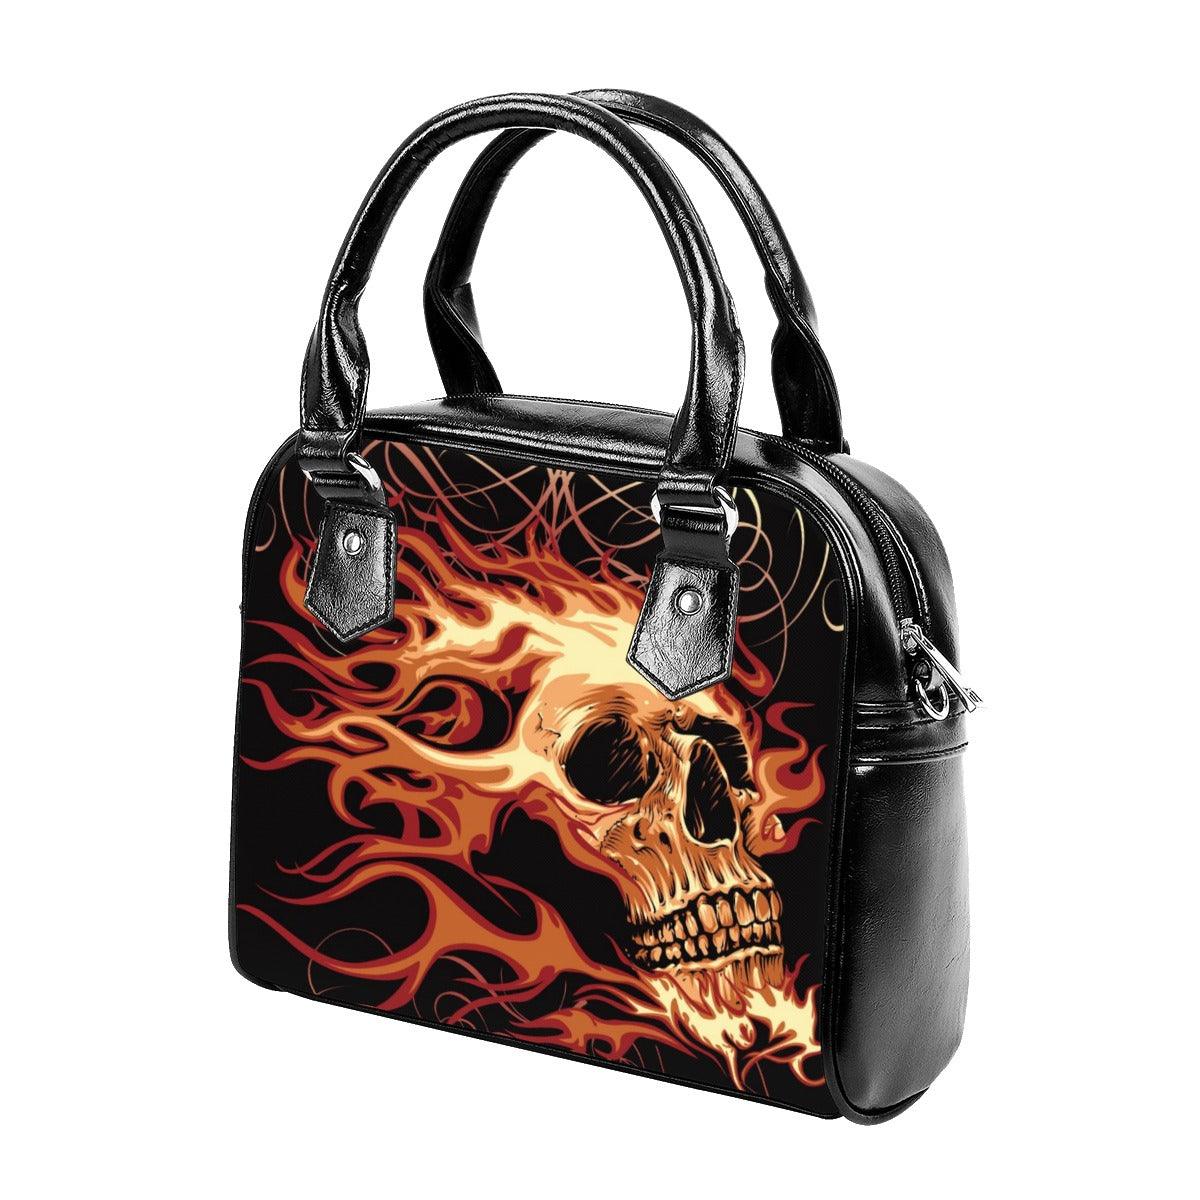 Skull Fire Leather Bag, Amazing Purses For Women - Wonder Skull